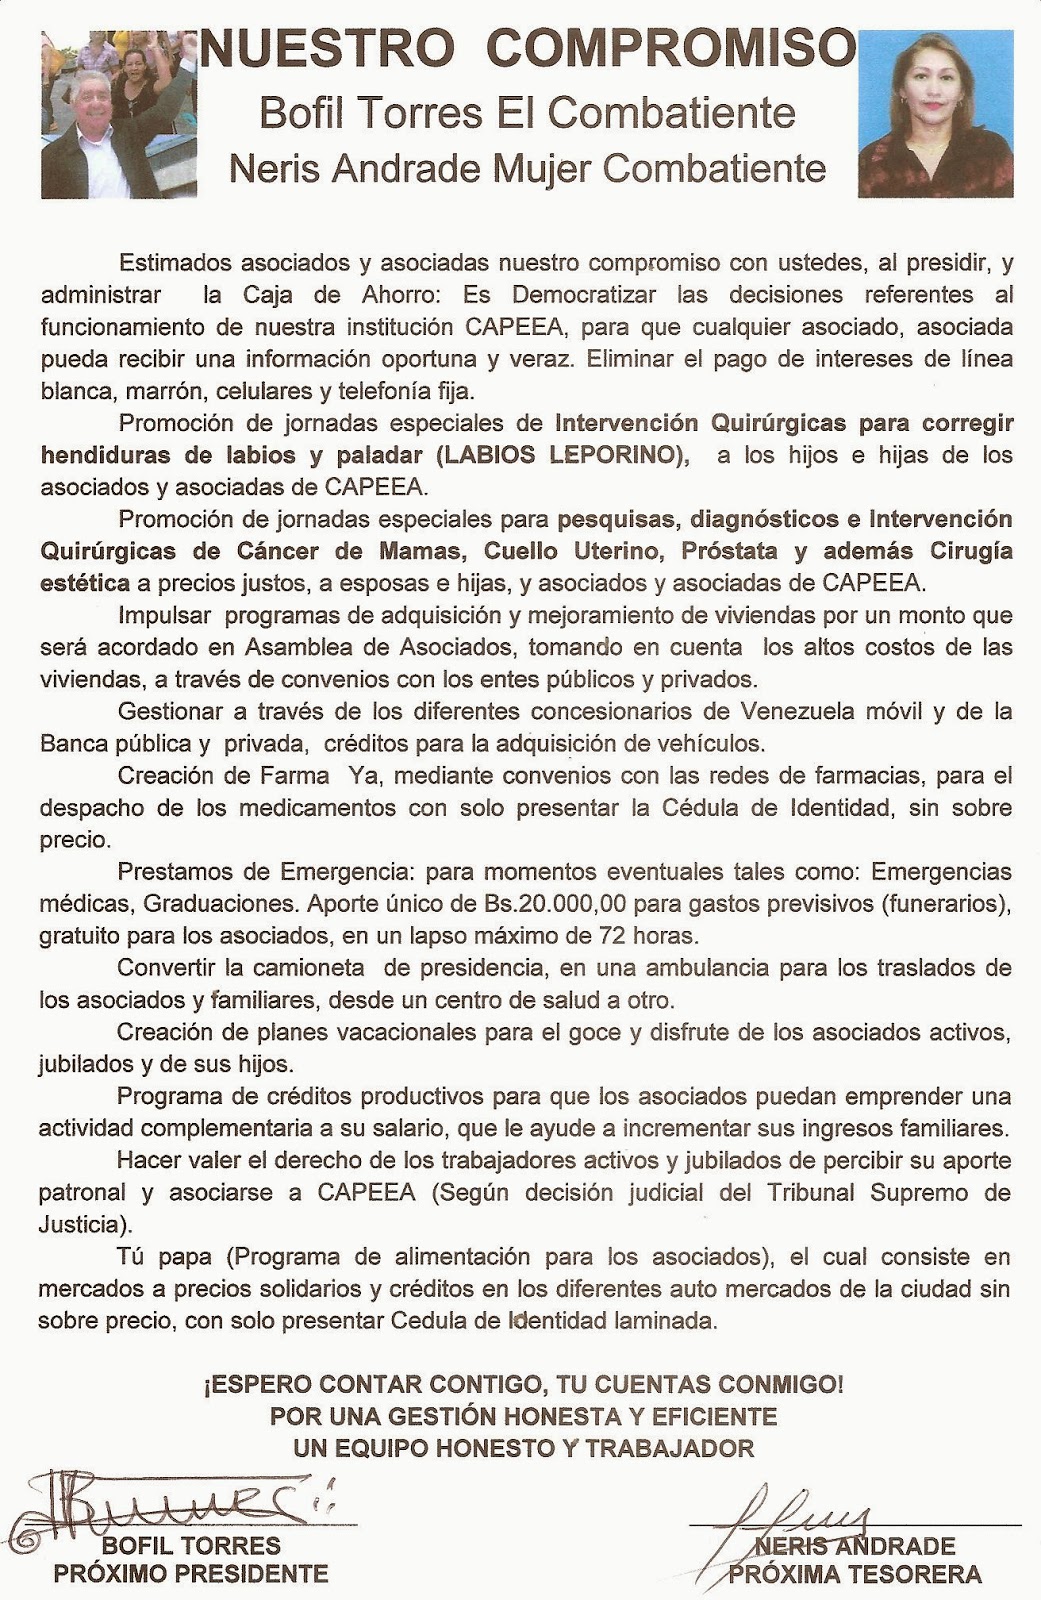 Presentamos parte de la propuesta de Bofil Torres y Neris Andrade para los afiliados a la caja de Ahorro del estado Apure.